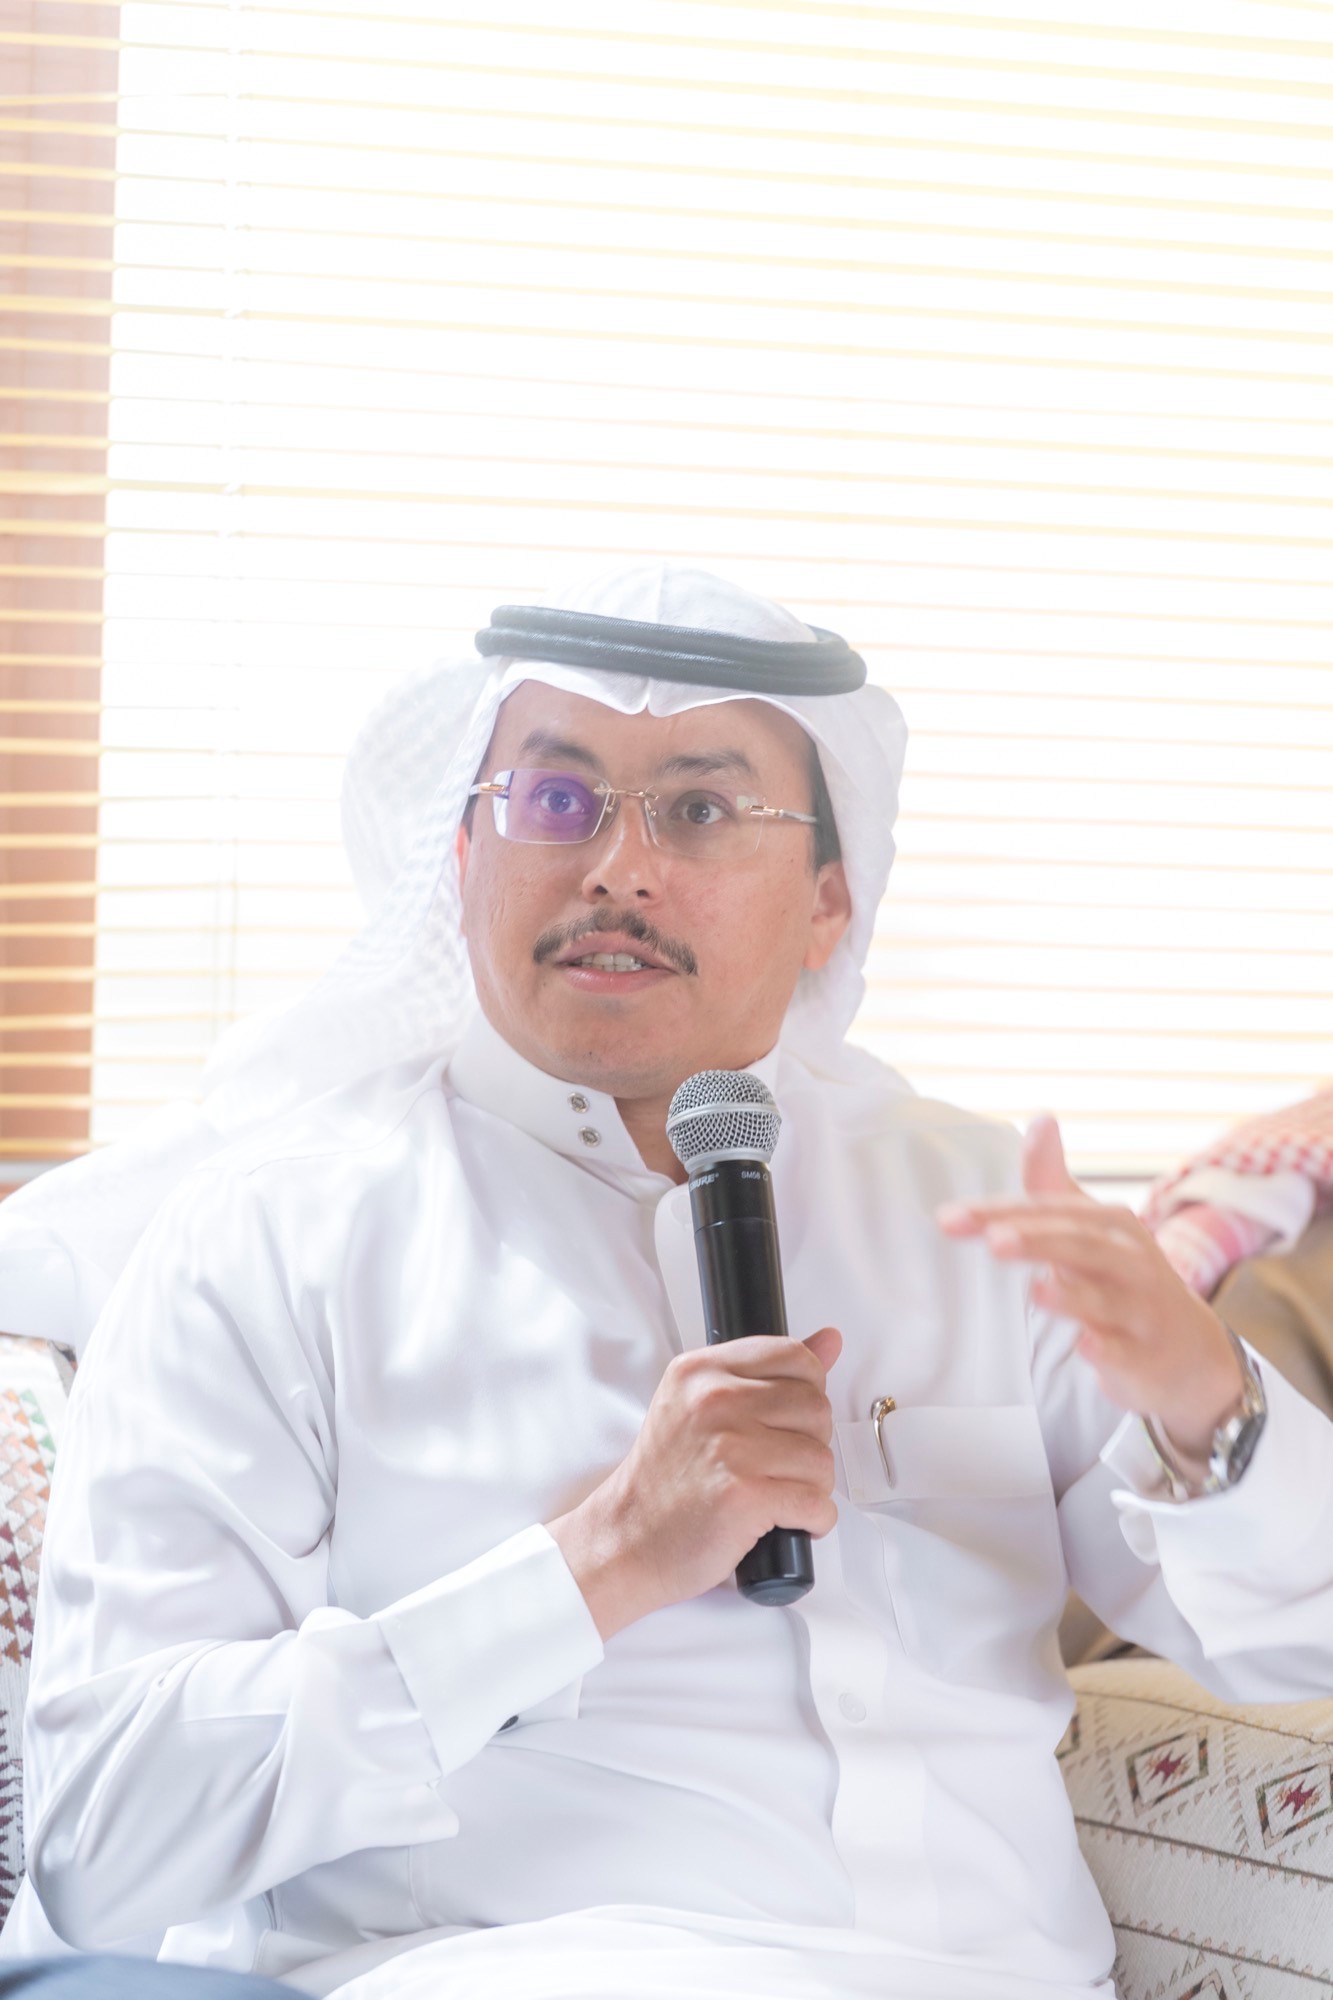 <span>رجل الأعمال ماجد العُمري يستضيف رئيس ونائب اللجنة الوطنية العقارية بمجلس الغرف السعودية</span>
